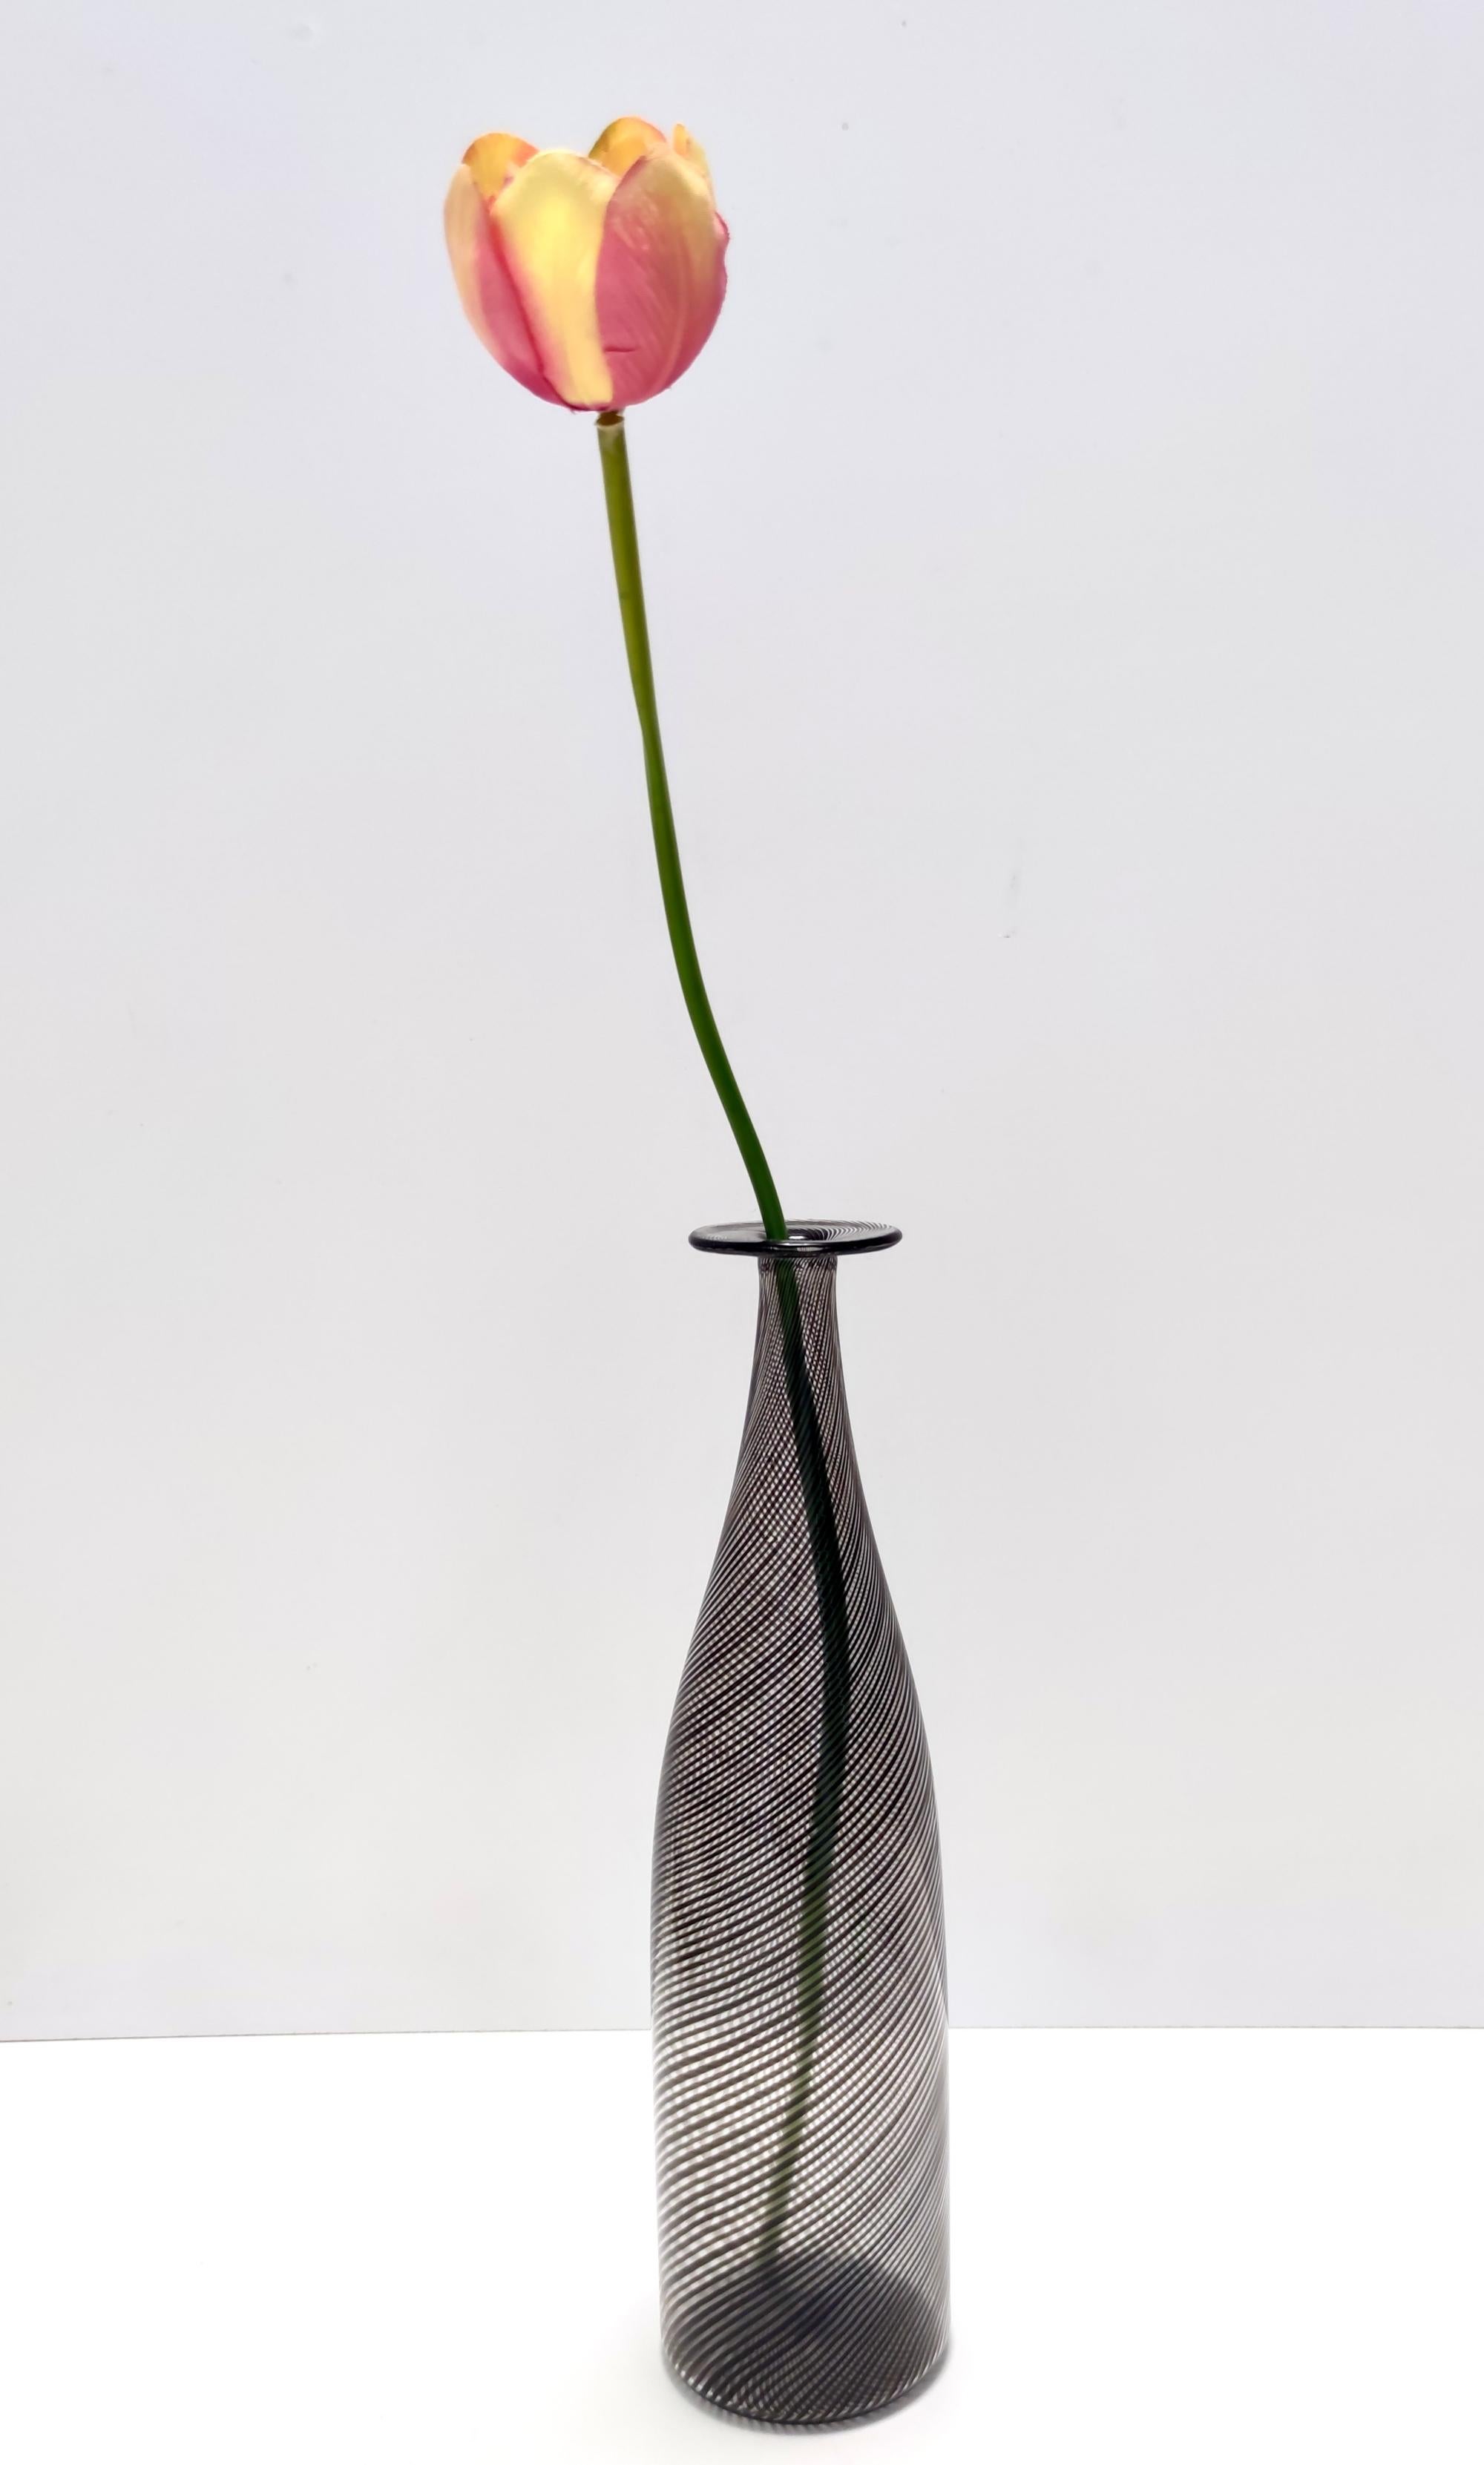 Hergestellt in Italien, 1950er - 1960er Jahre. 
Diese wunderschöne Vase / Flasche ist aus schwarzem und transparentem mezza filigrana Murano mundgeblasenem Glas hergestellt.
Da es sich um ein Vintage-Stück handelt, kann es leichte Gebrauchsspuren